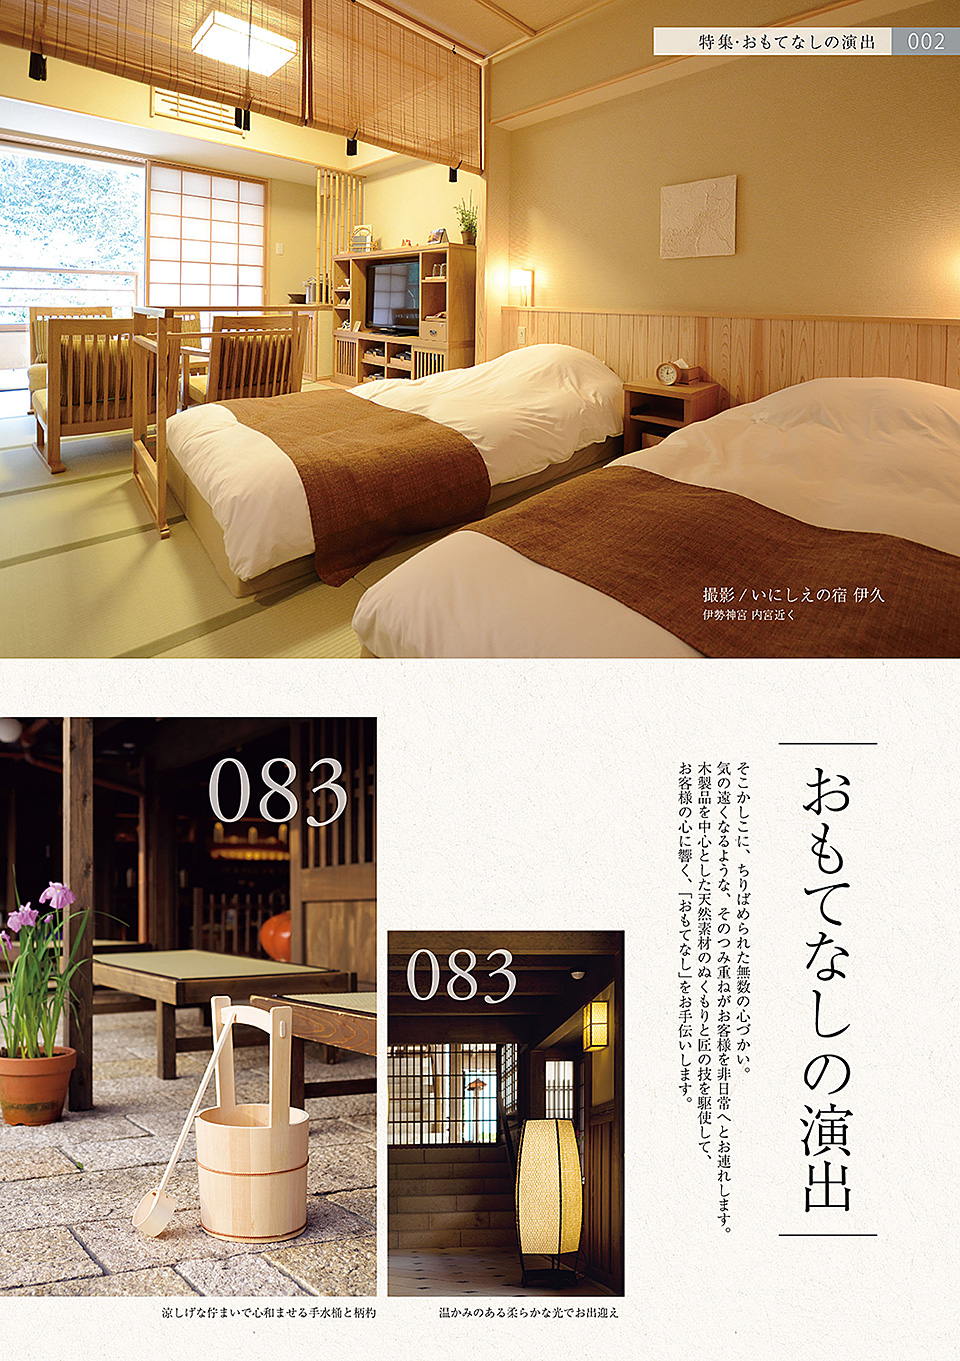 しつらいの栞 vol.2 ホテル・旅館 おもてなしカタログ Hotel "OMOTENASHI" guide